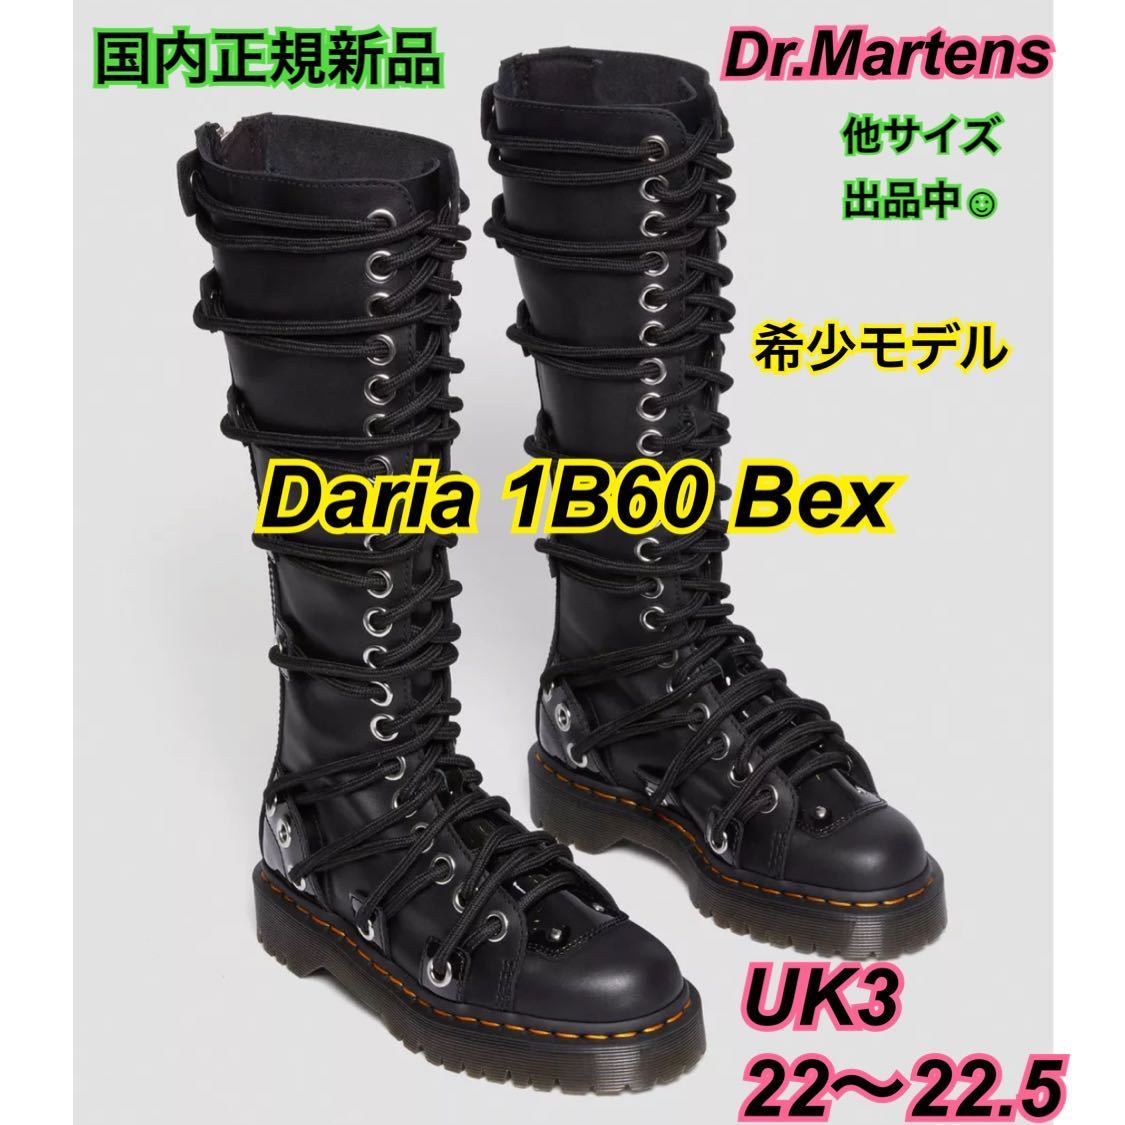 新品 希少モデル ドクターマーチン UK3 22.5 DARIA 1B60 BEX ダリア 厚底 ロングブーツ 30798001